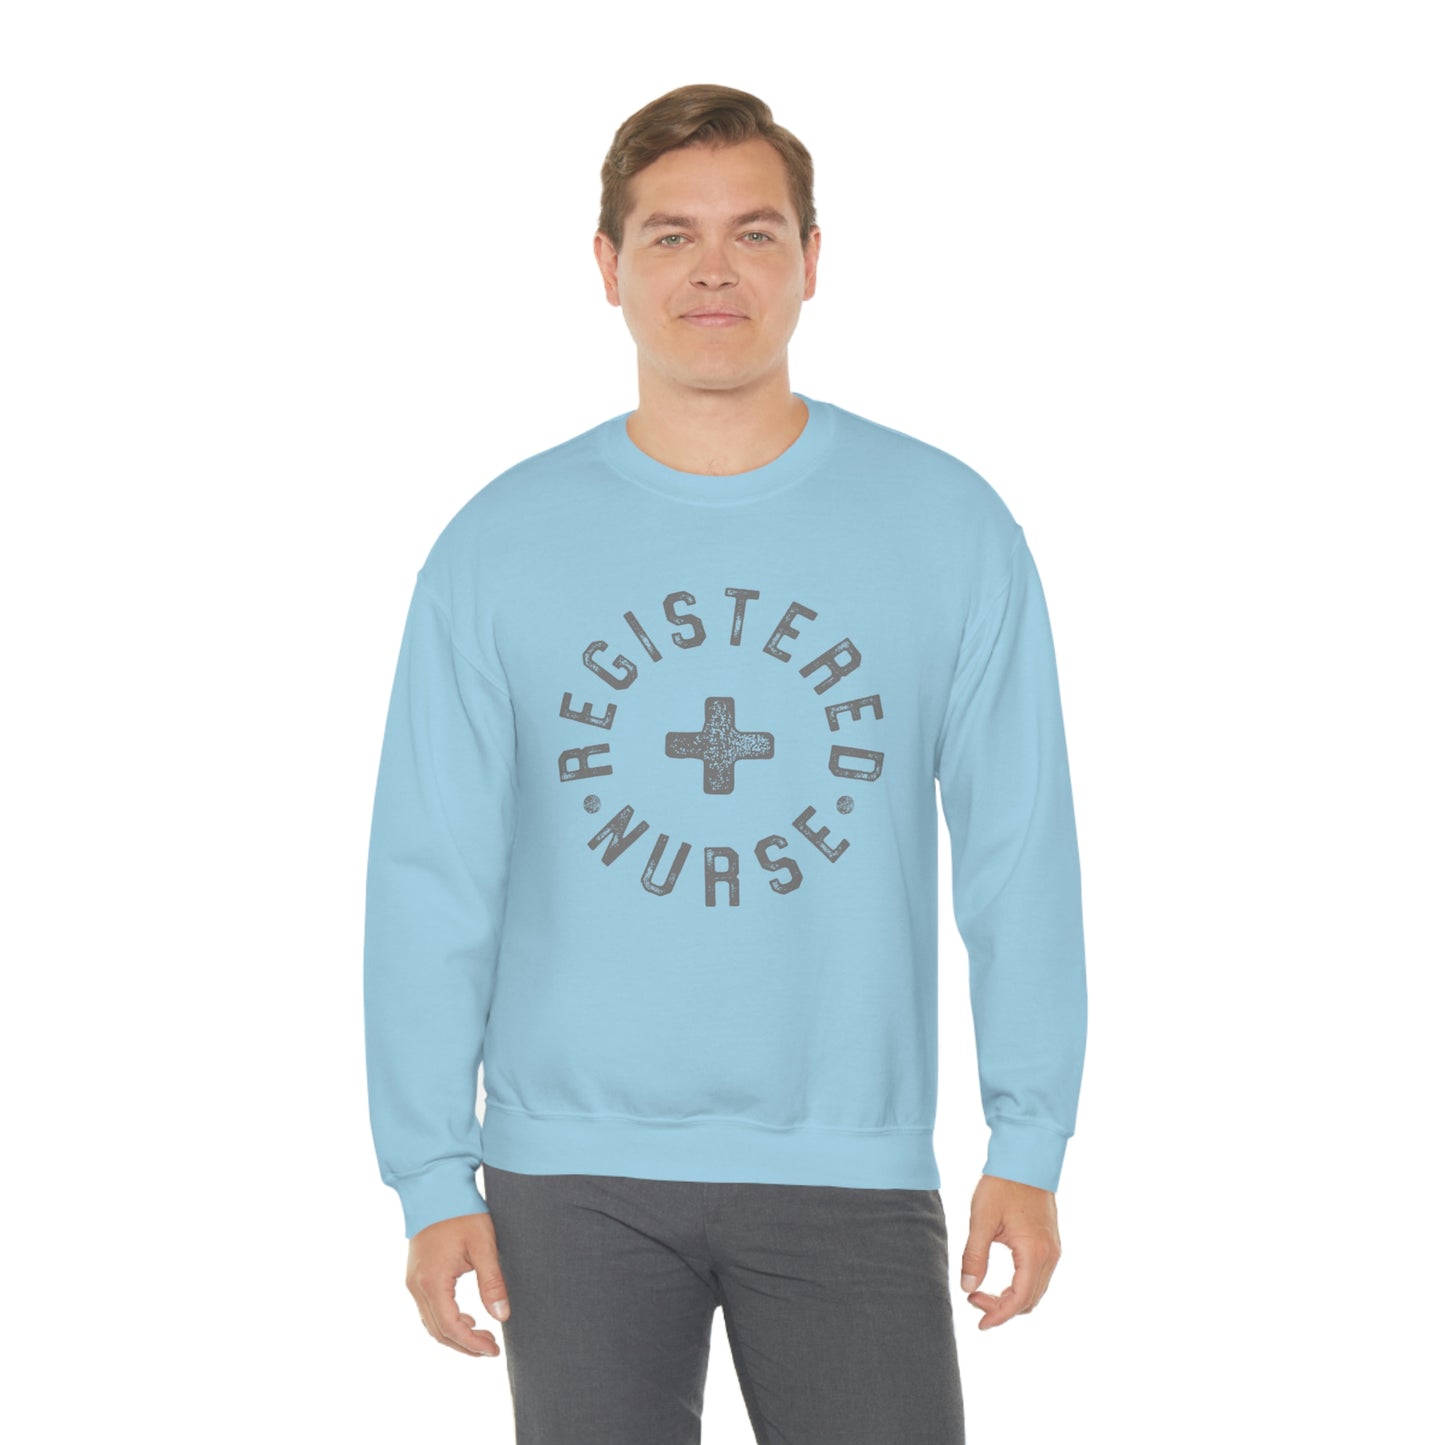 "Registered Nurse" Unisex Crewneck Sweatshirt